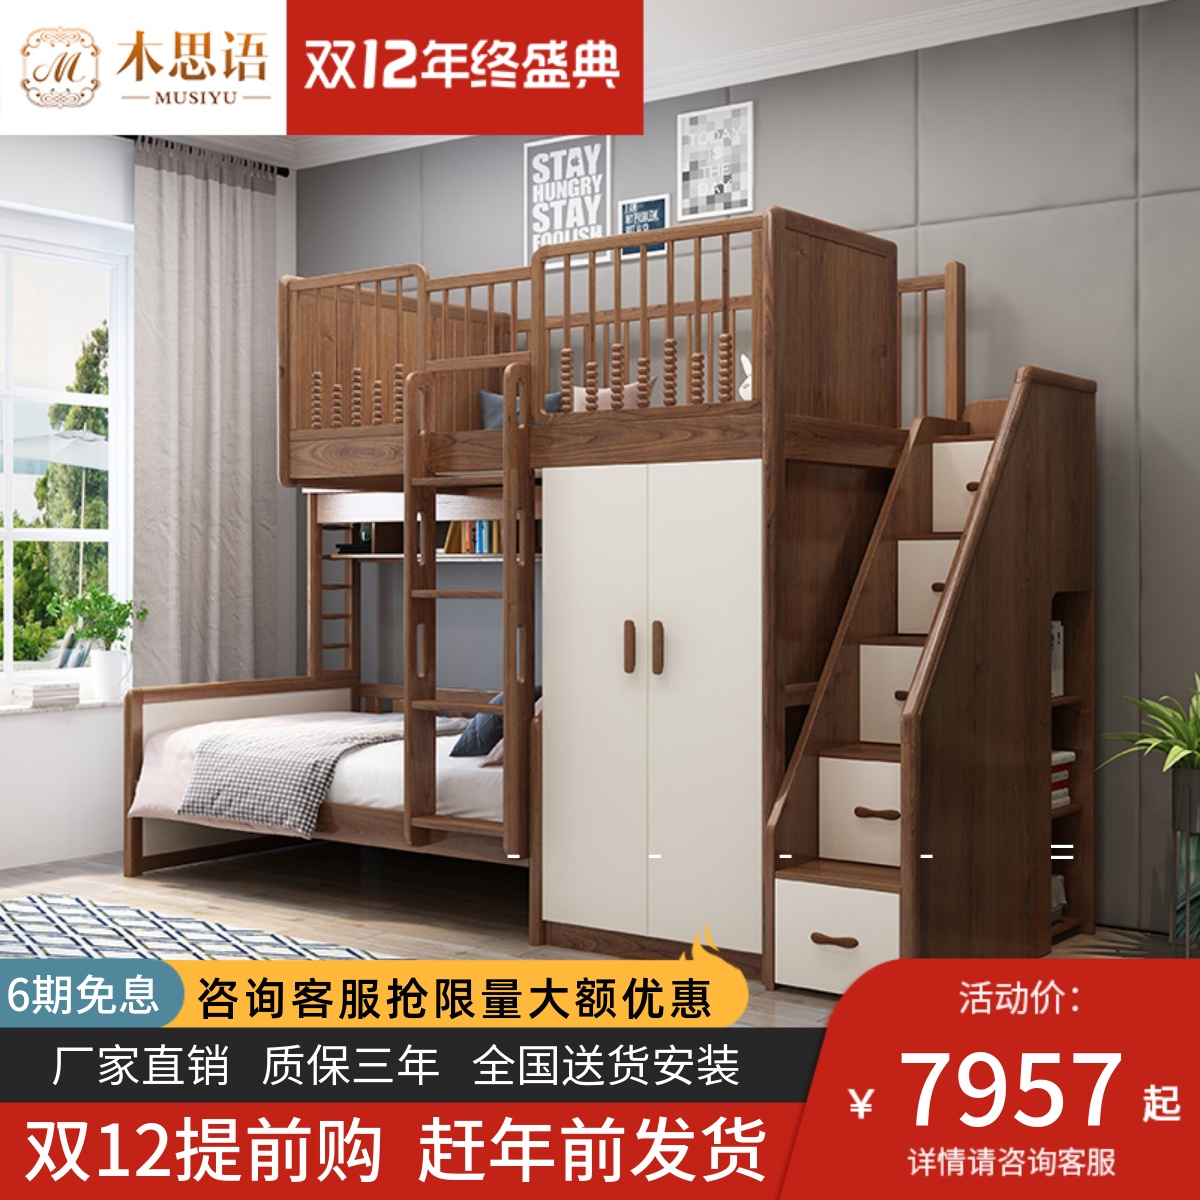 欧式卧室床效果图-上海装潢网